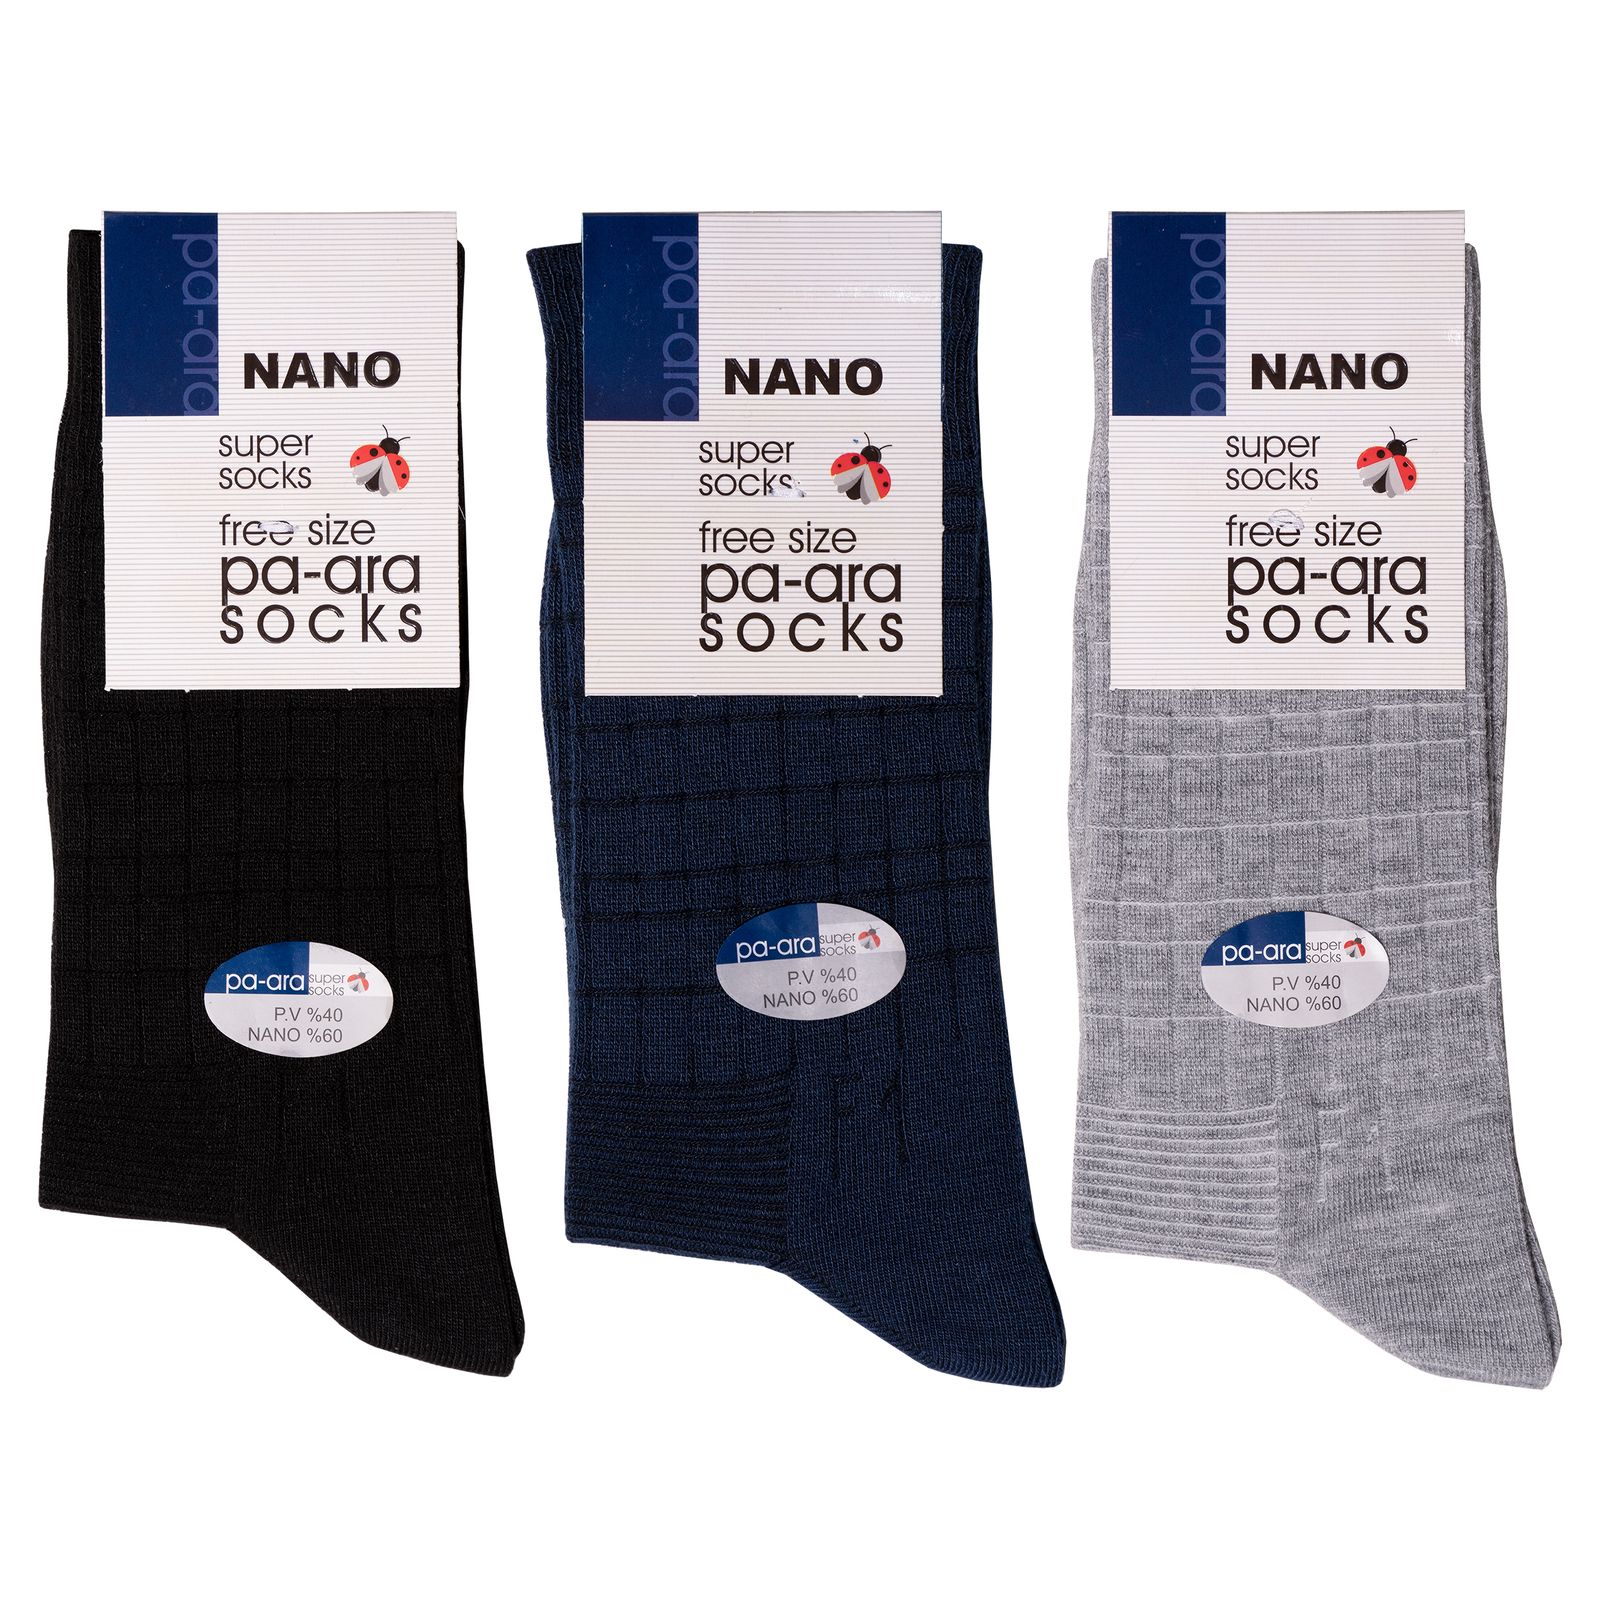 جوراب مردانه پاآرا مدل نانو 60 کد 6011 مجموعه 3 عددی -  - 2